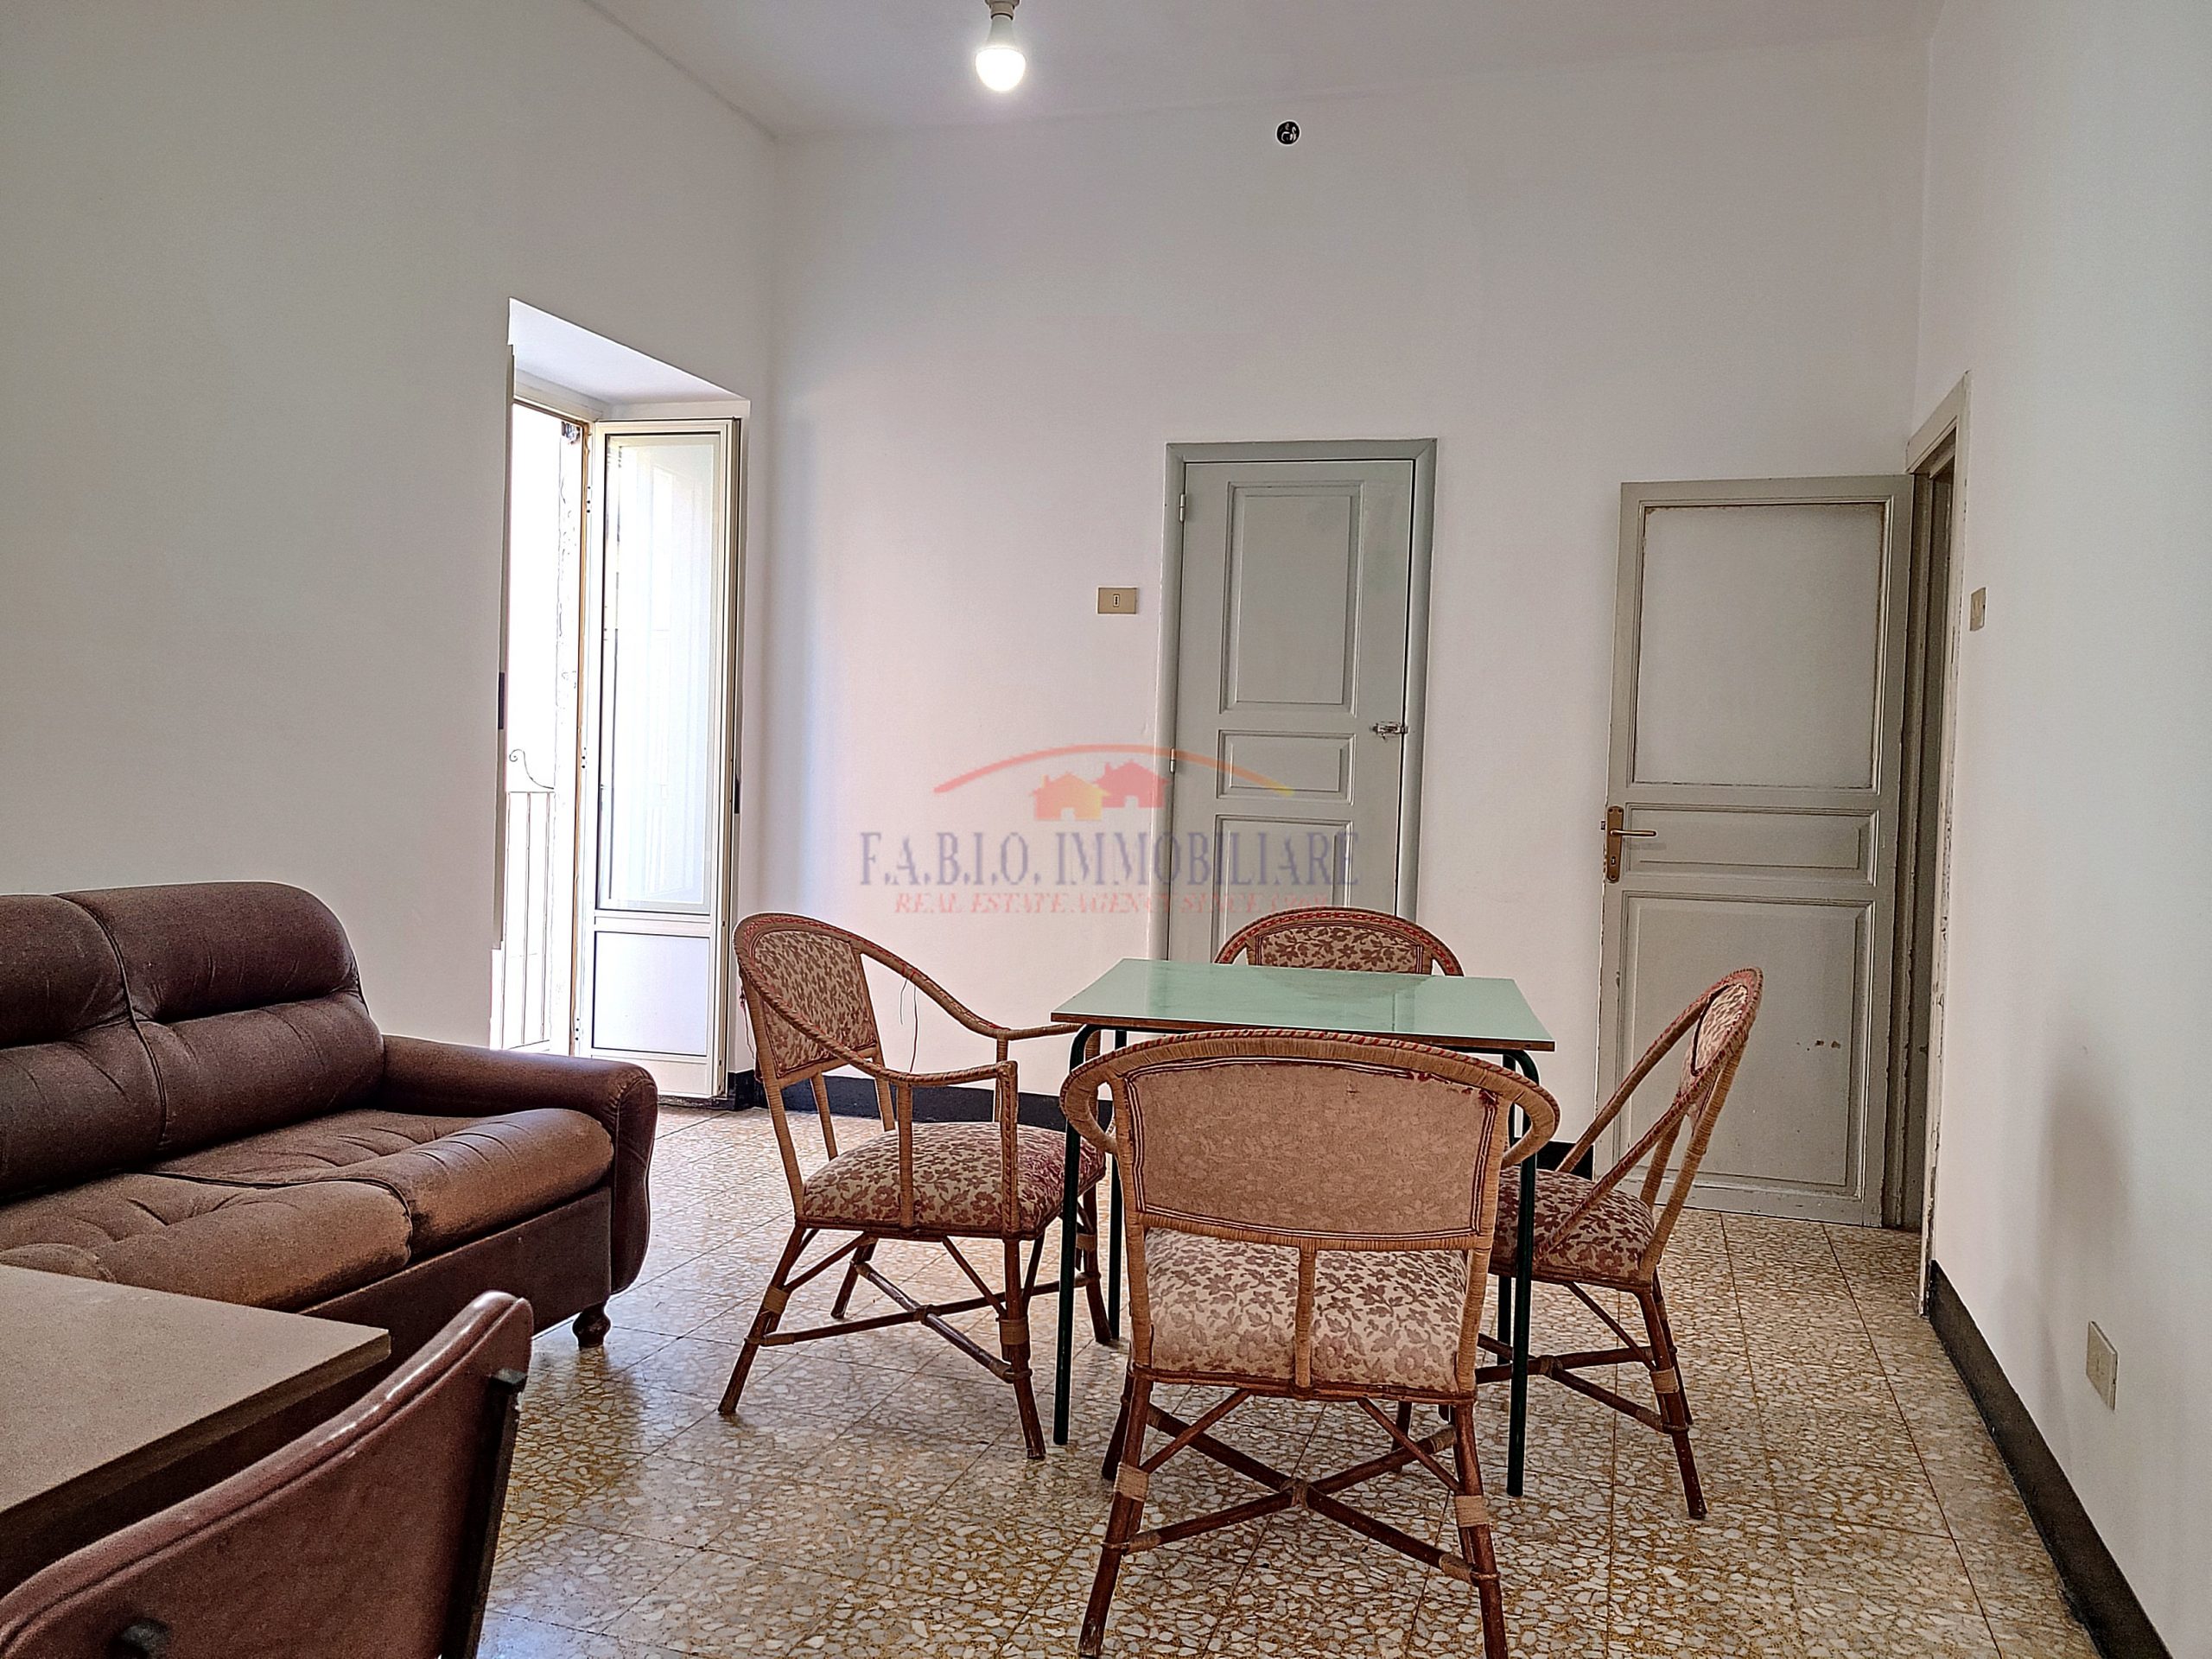 Ragusa – Casa indipendente mq. 120 disposta su due livelli – zona centro